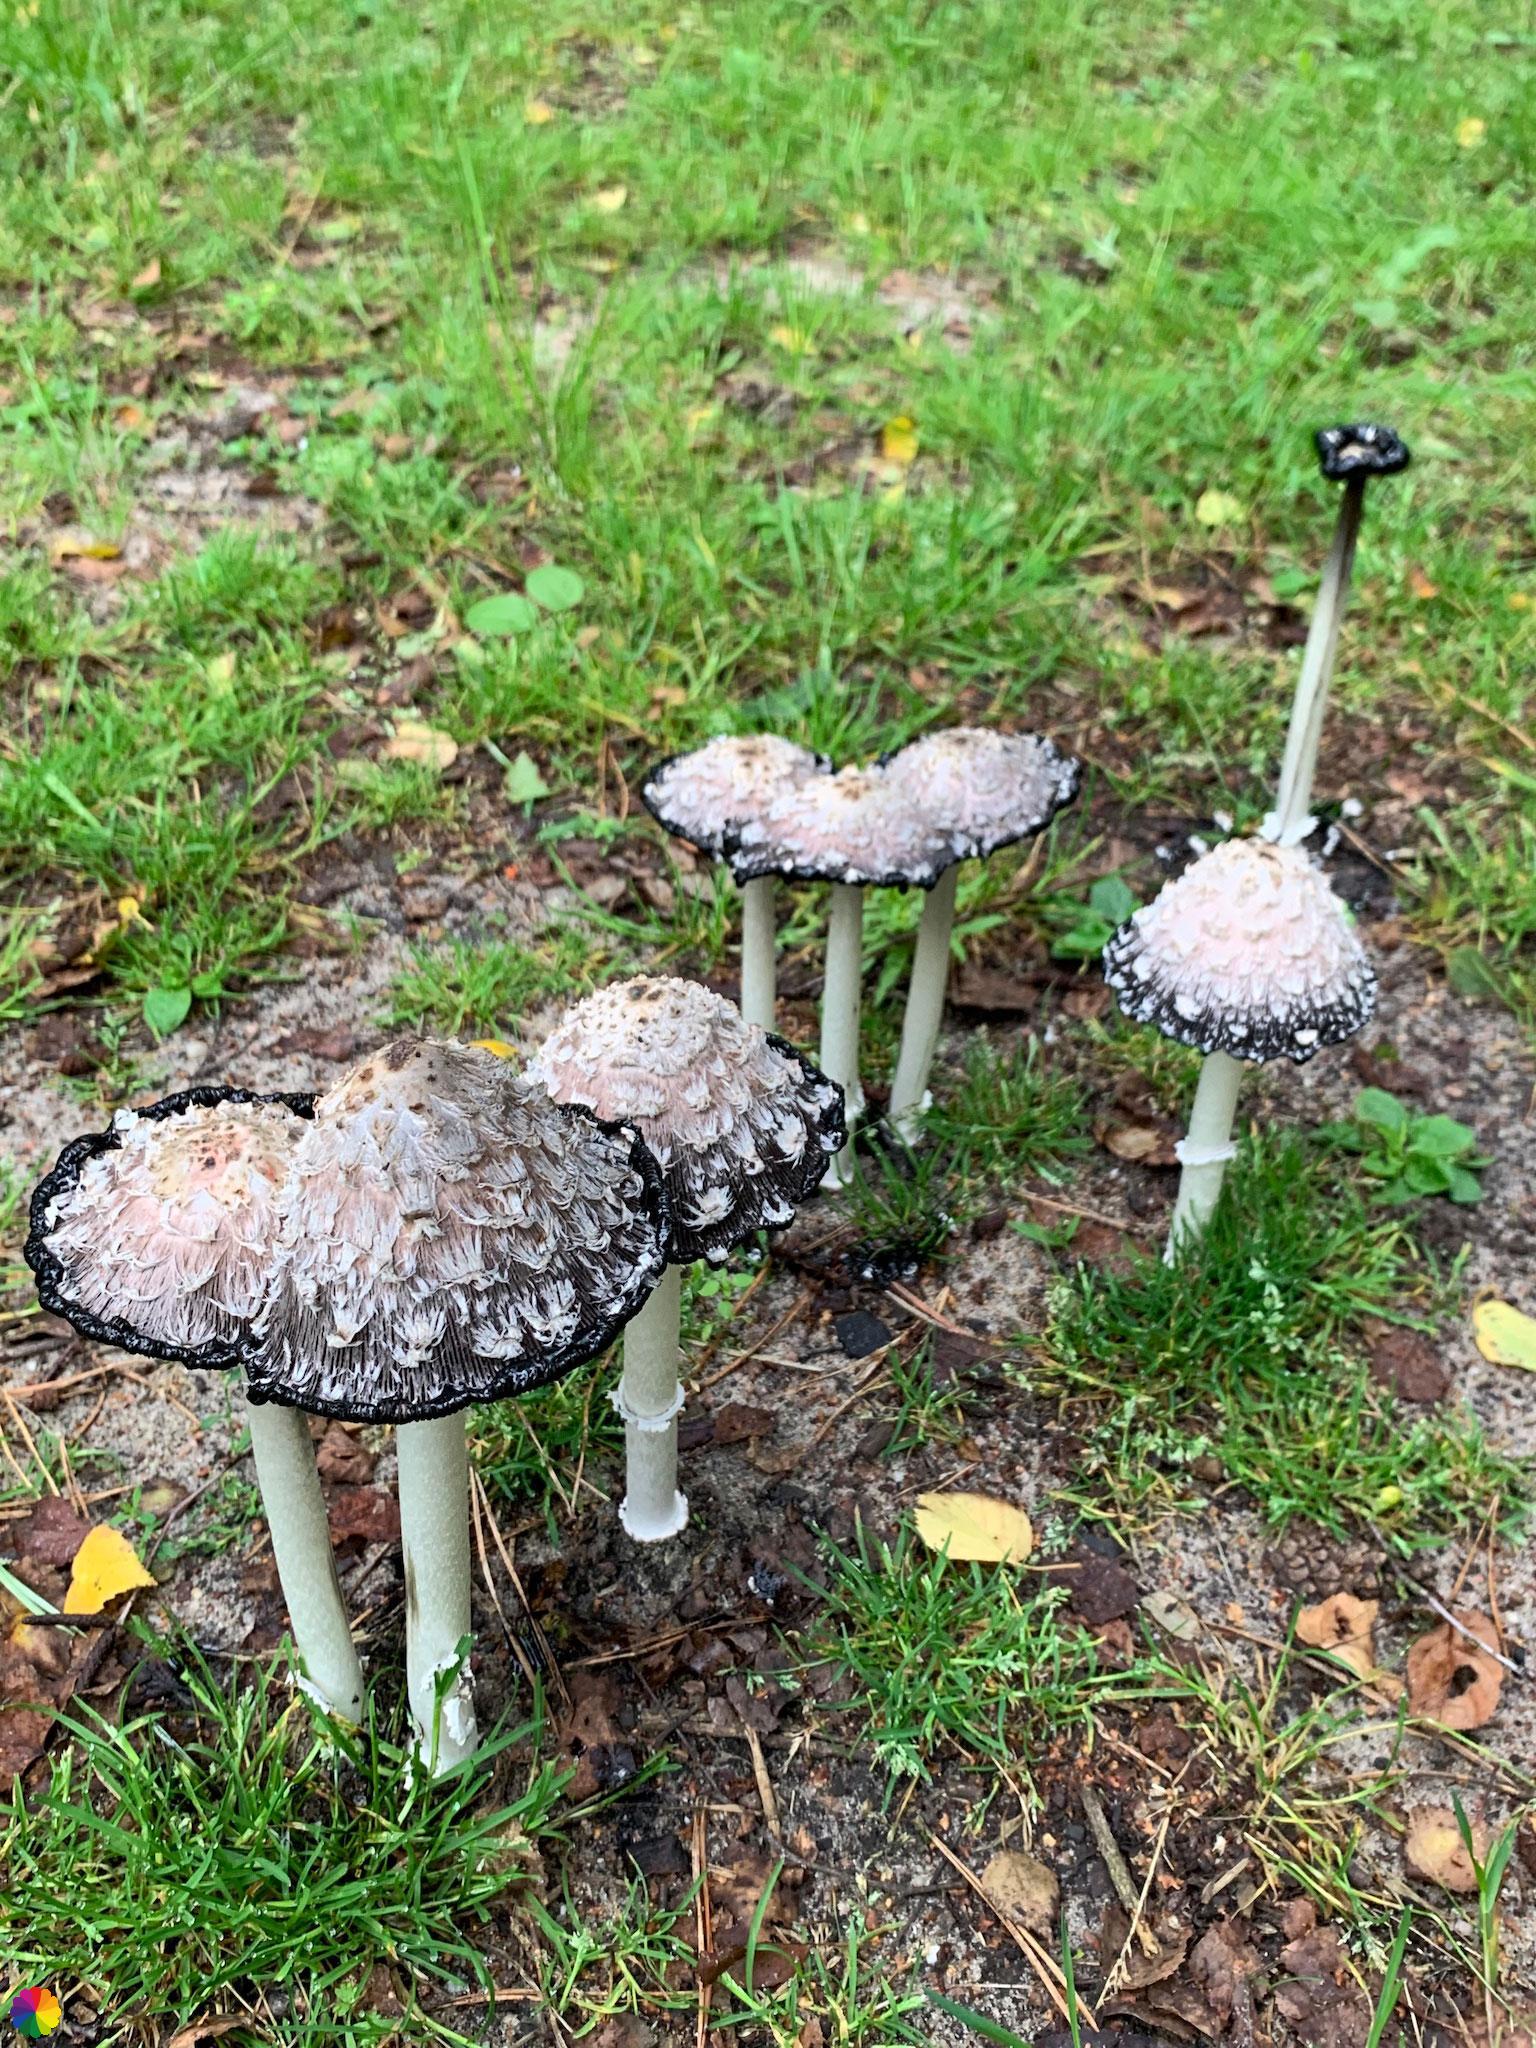 Inky cap mushrooms